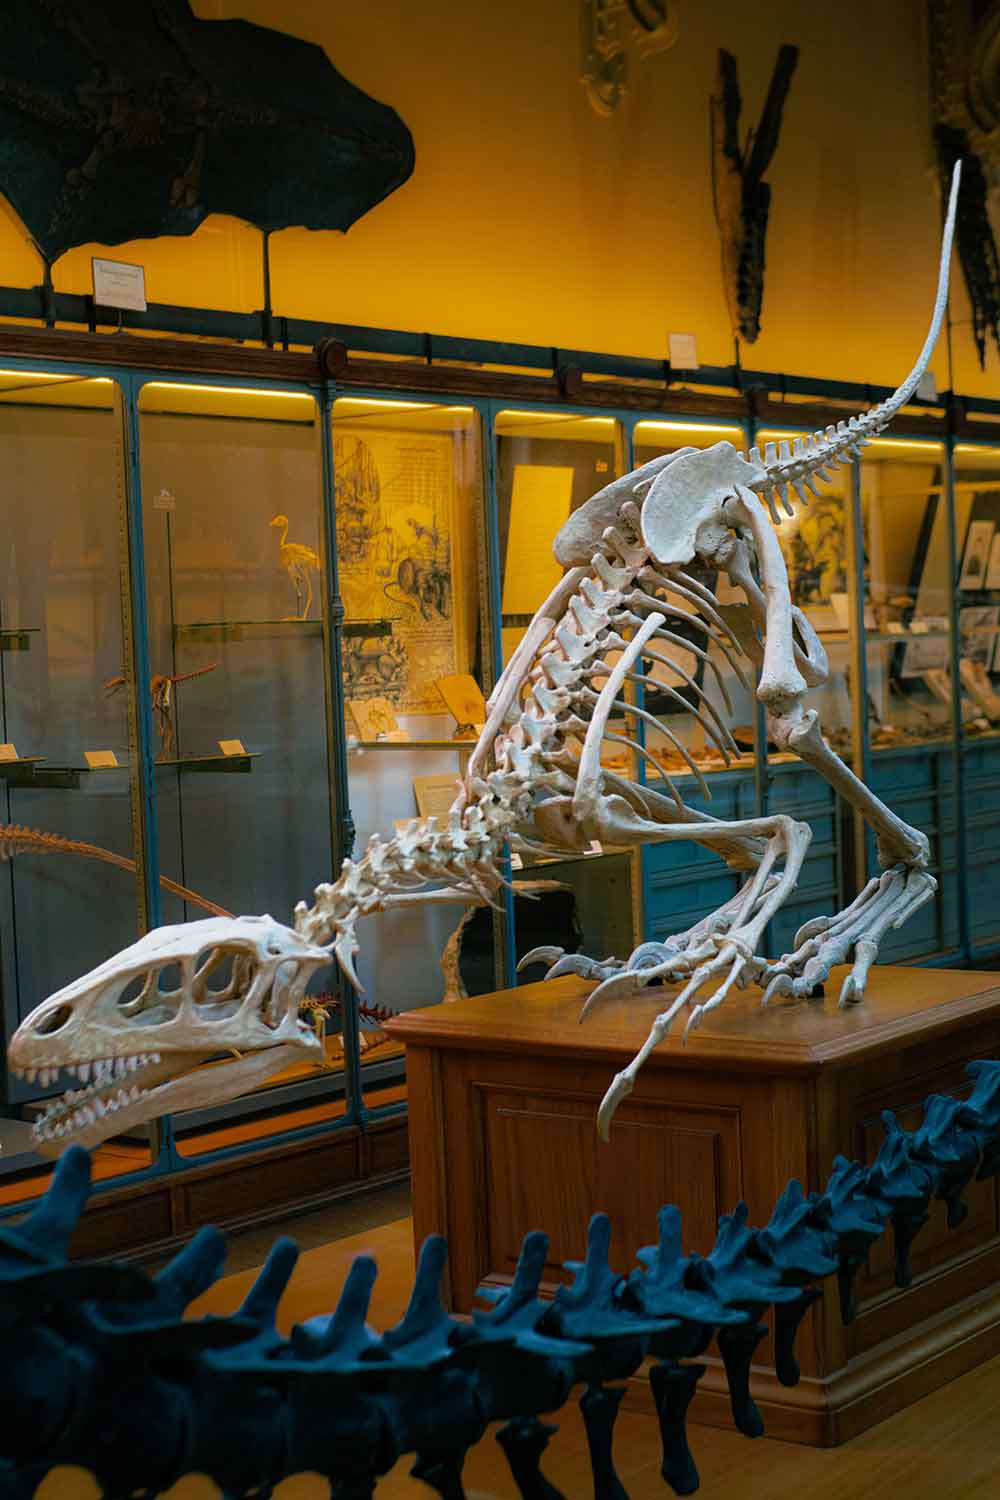 PDP 个人全能发展计划之唤醒古生物——恐龙时代古生物探秘项目